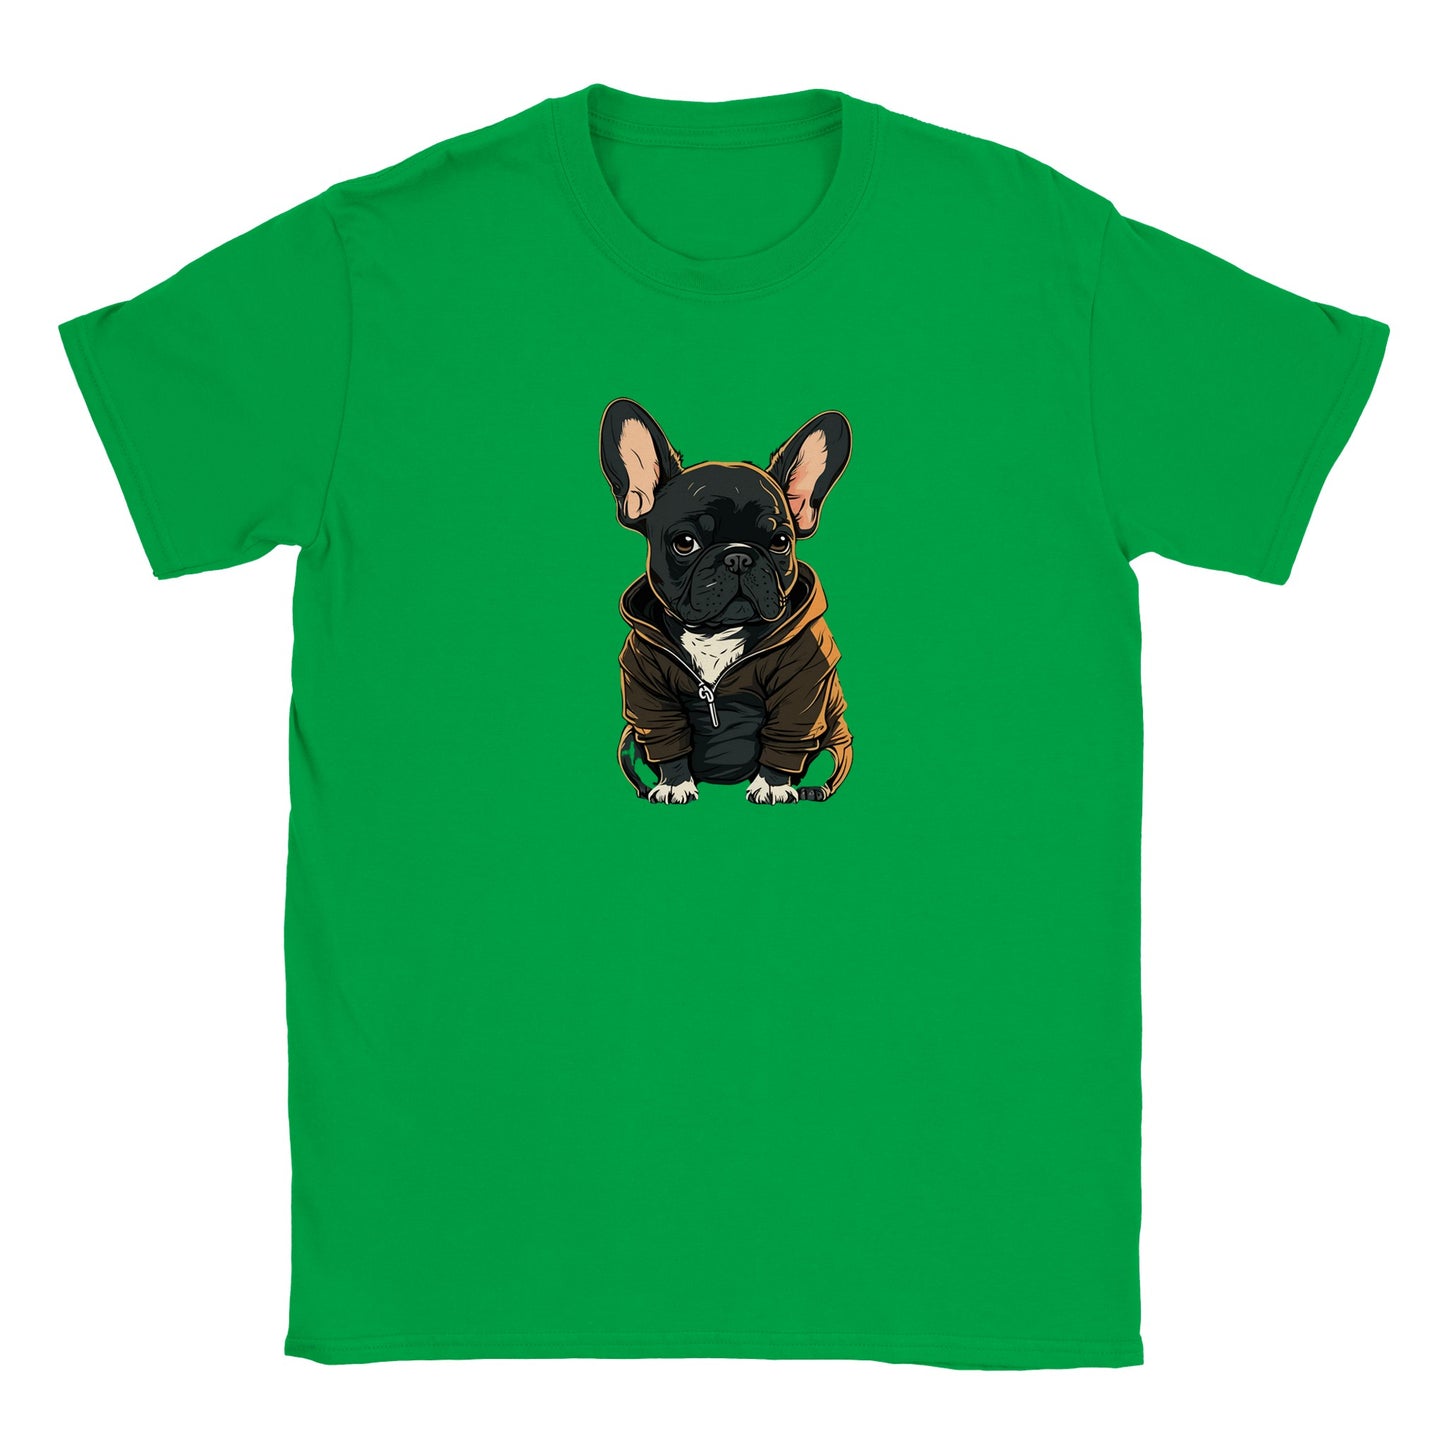 Dog T-shirt - French Bulldog Dark Hoodie Artwork - Classic Kids T-shirt 